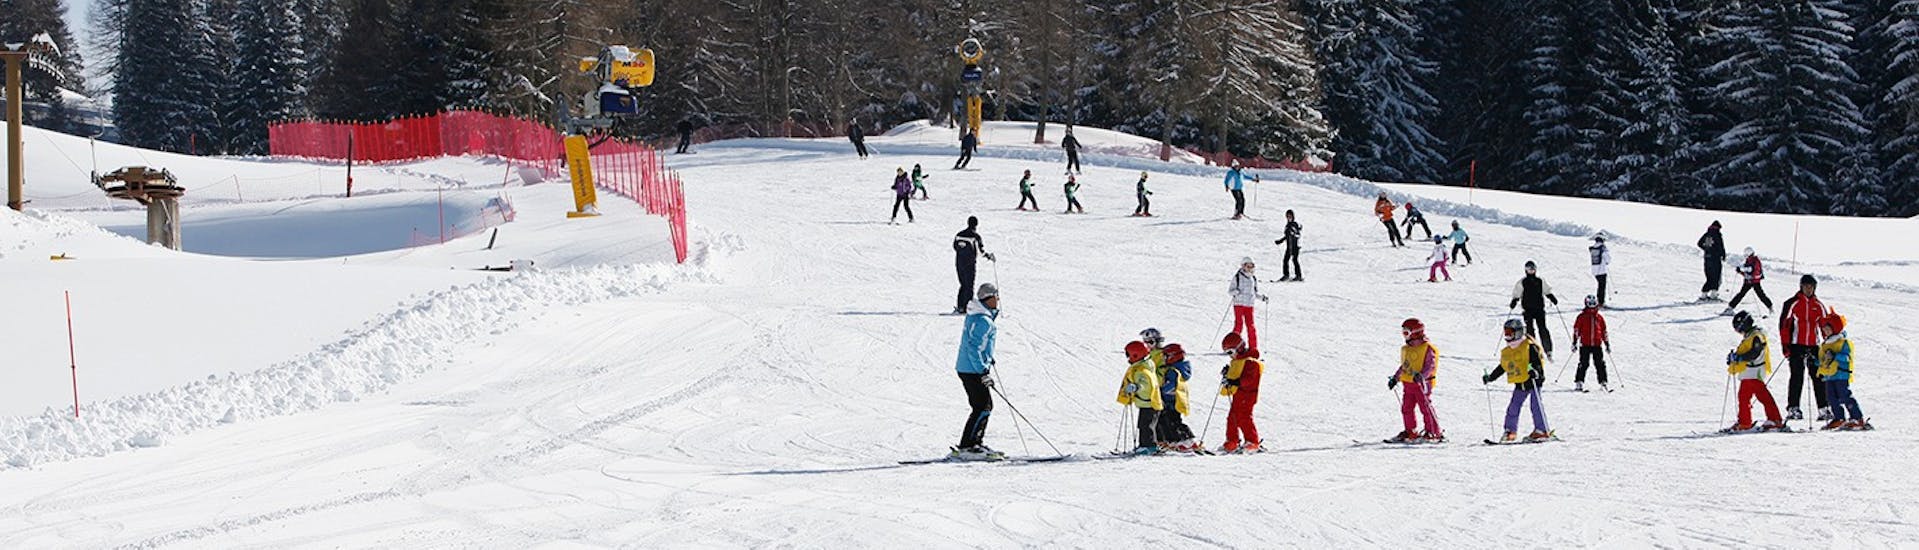 Pista innevata dove avvengono le Lezioni di sci per bambini (4-5 anni) per principianti con la Scuola Italiana Sci Folgaria - Serrada.